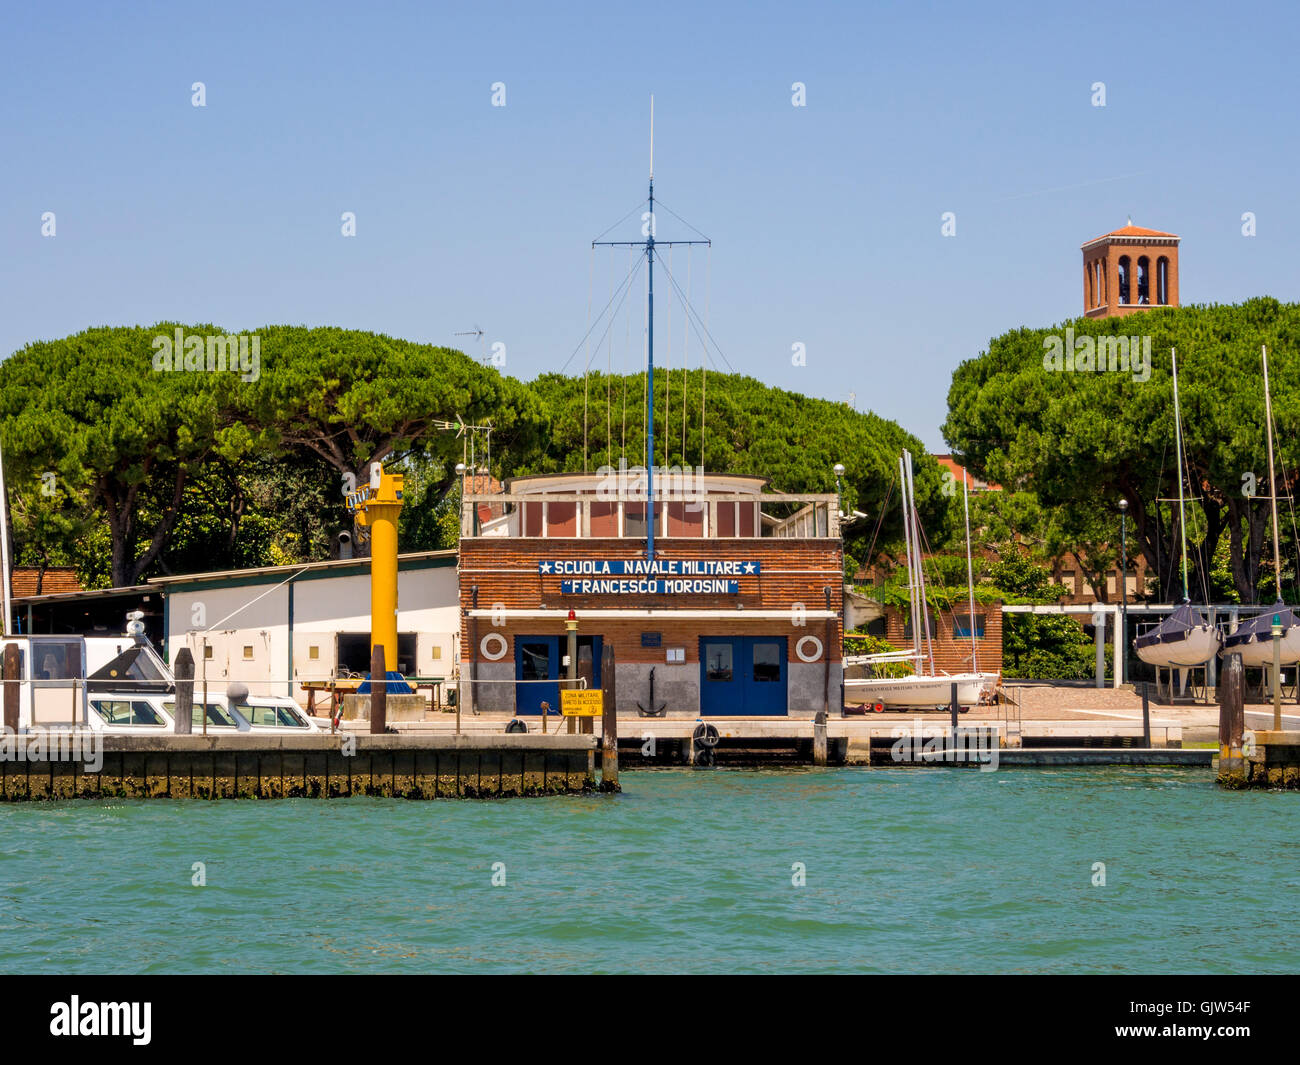 Ecole Navale Militare 'Francesco Morosini'. Venise, Italie. Banque D'Images